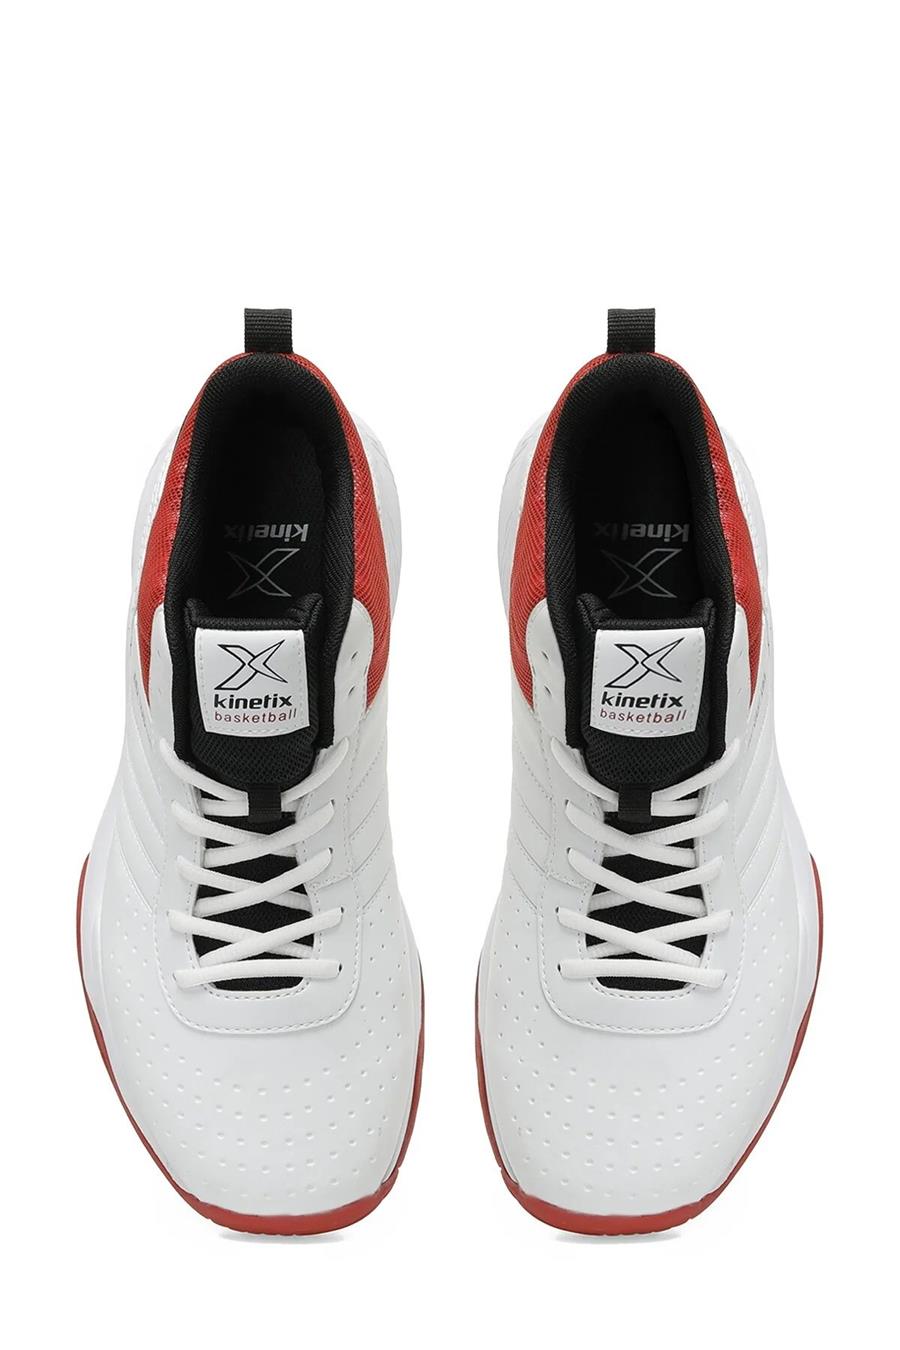 Kinetix Tractıon Pu 3Pr Beyaz Siyah Kırmızı Erkek Basketbol Ayakkabı